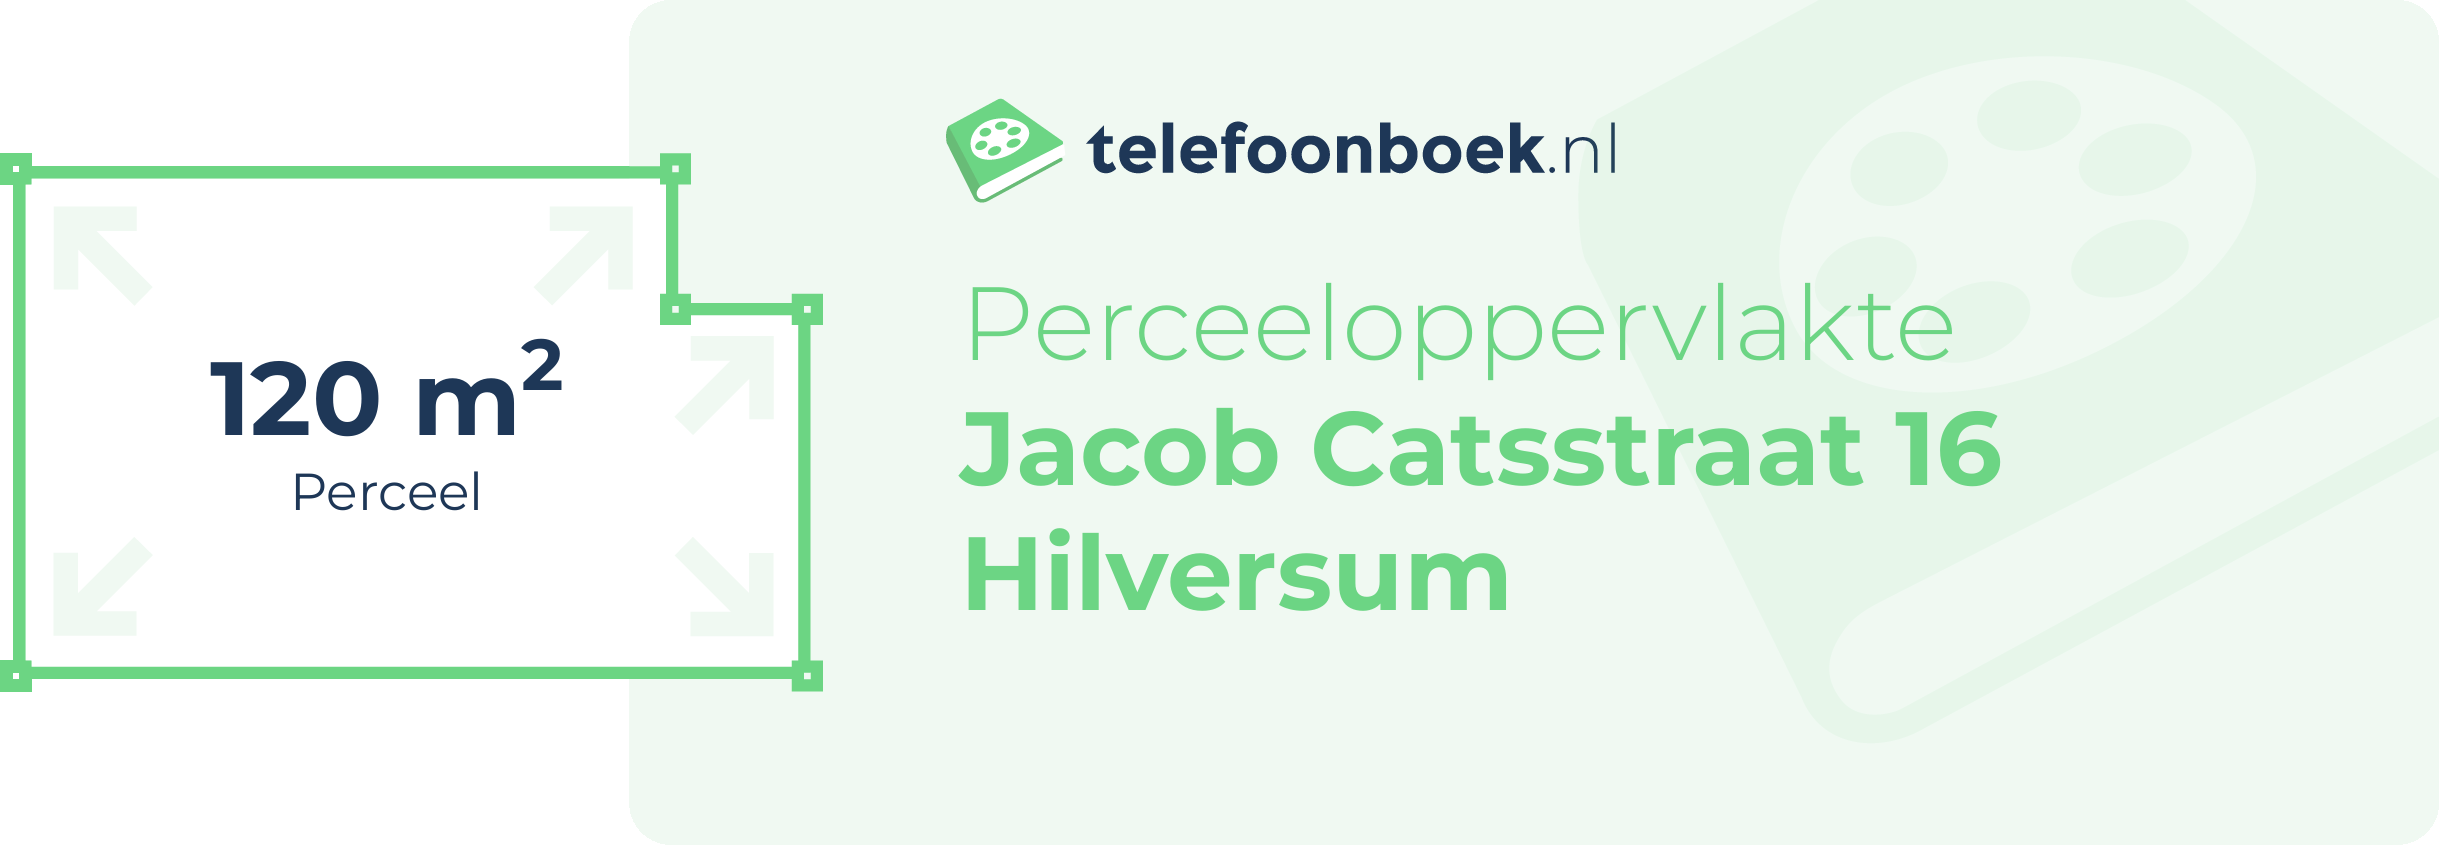 Perceeloppervlakte Jacob Catsstraat 16 Hilversum